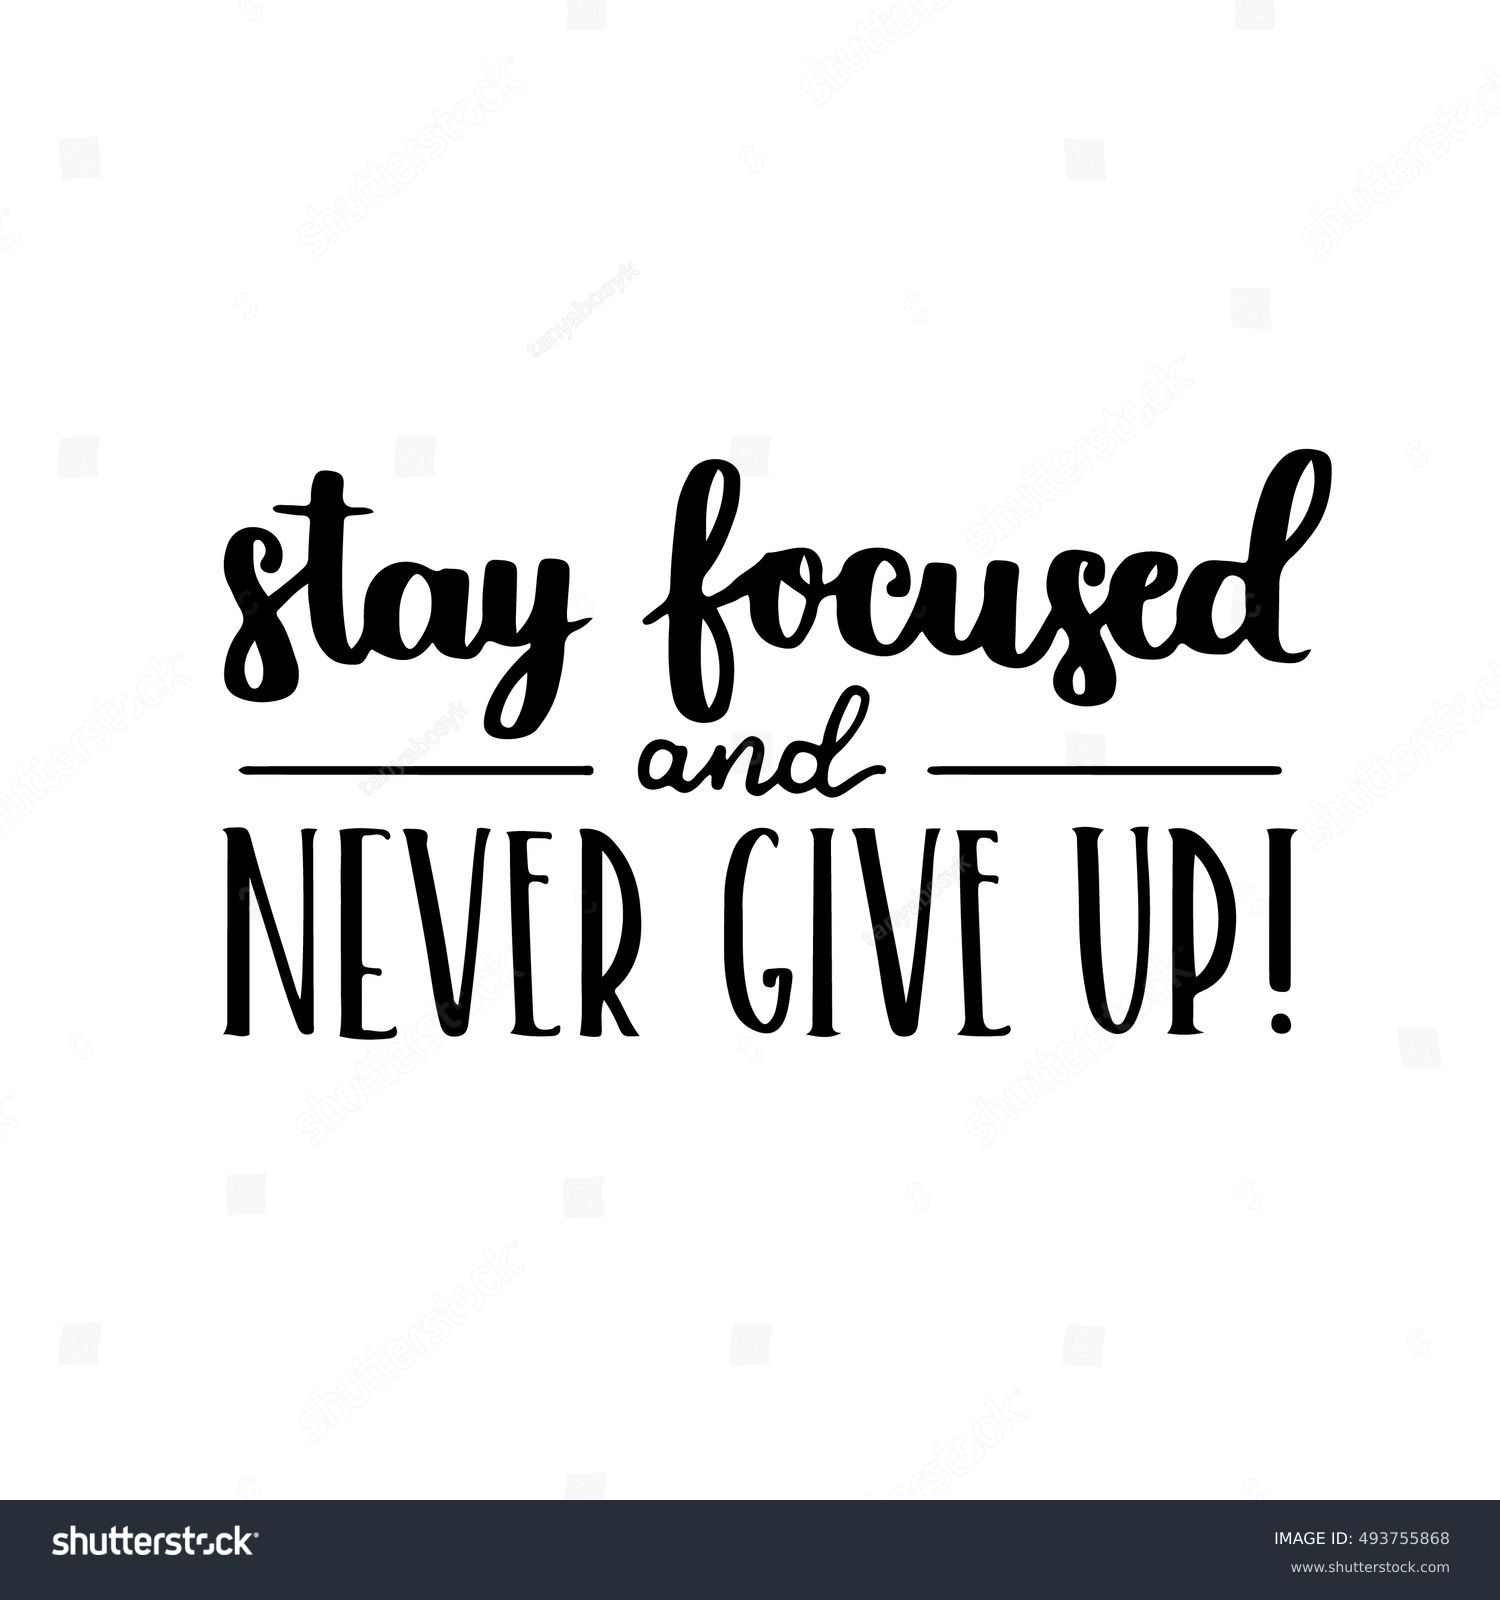 Stay Focused Quotes Images Photos Et Images Vectorielles De Stock Shutterstock